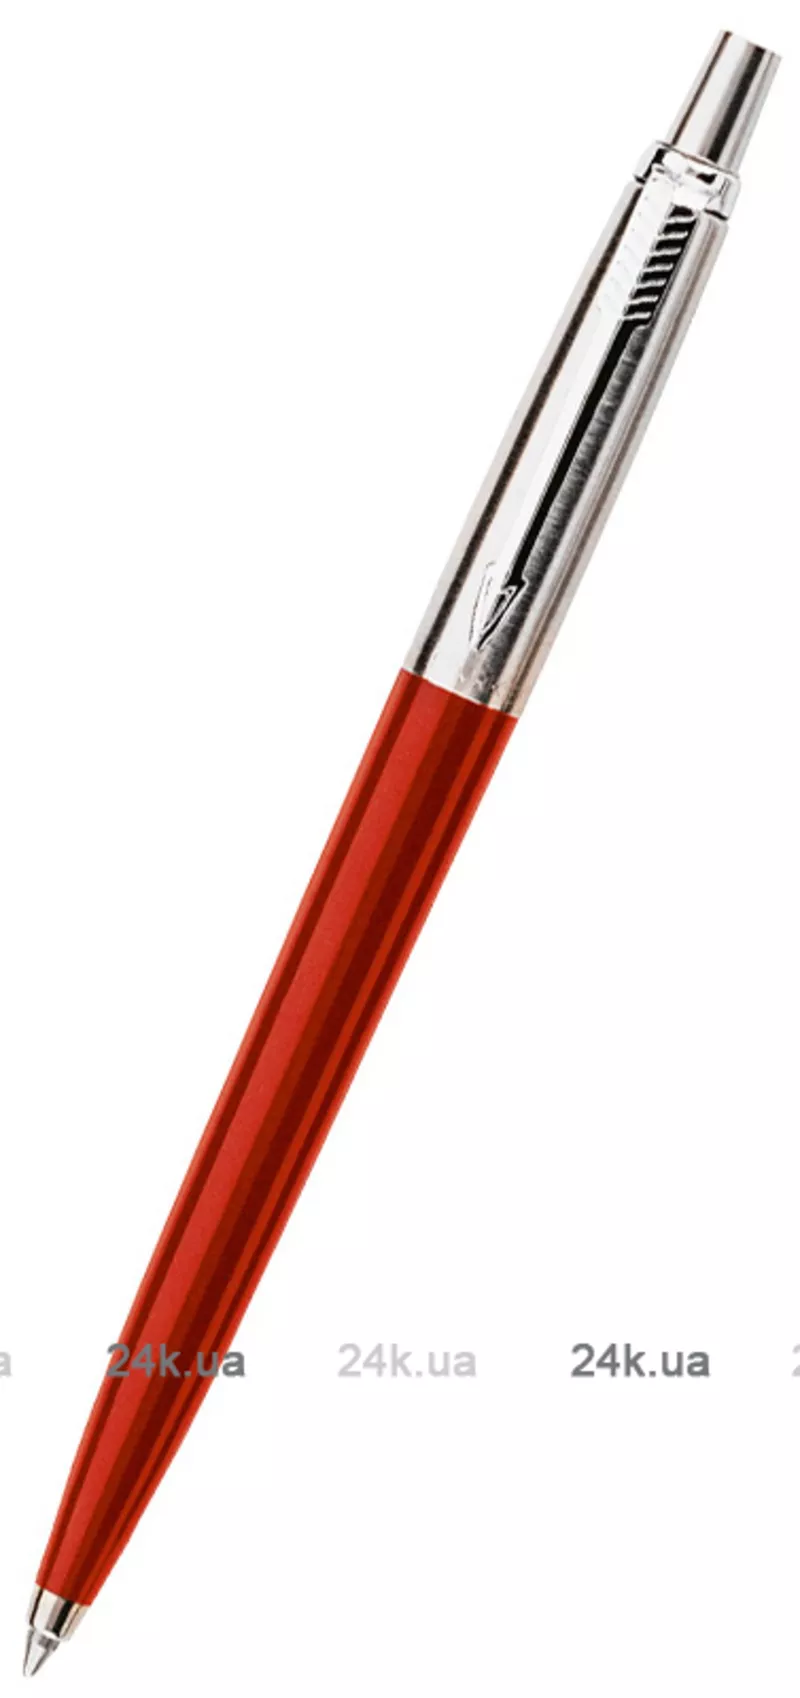 Ручка Parker Jotter Standart New Red BP 78 032R